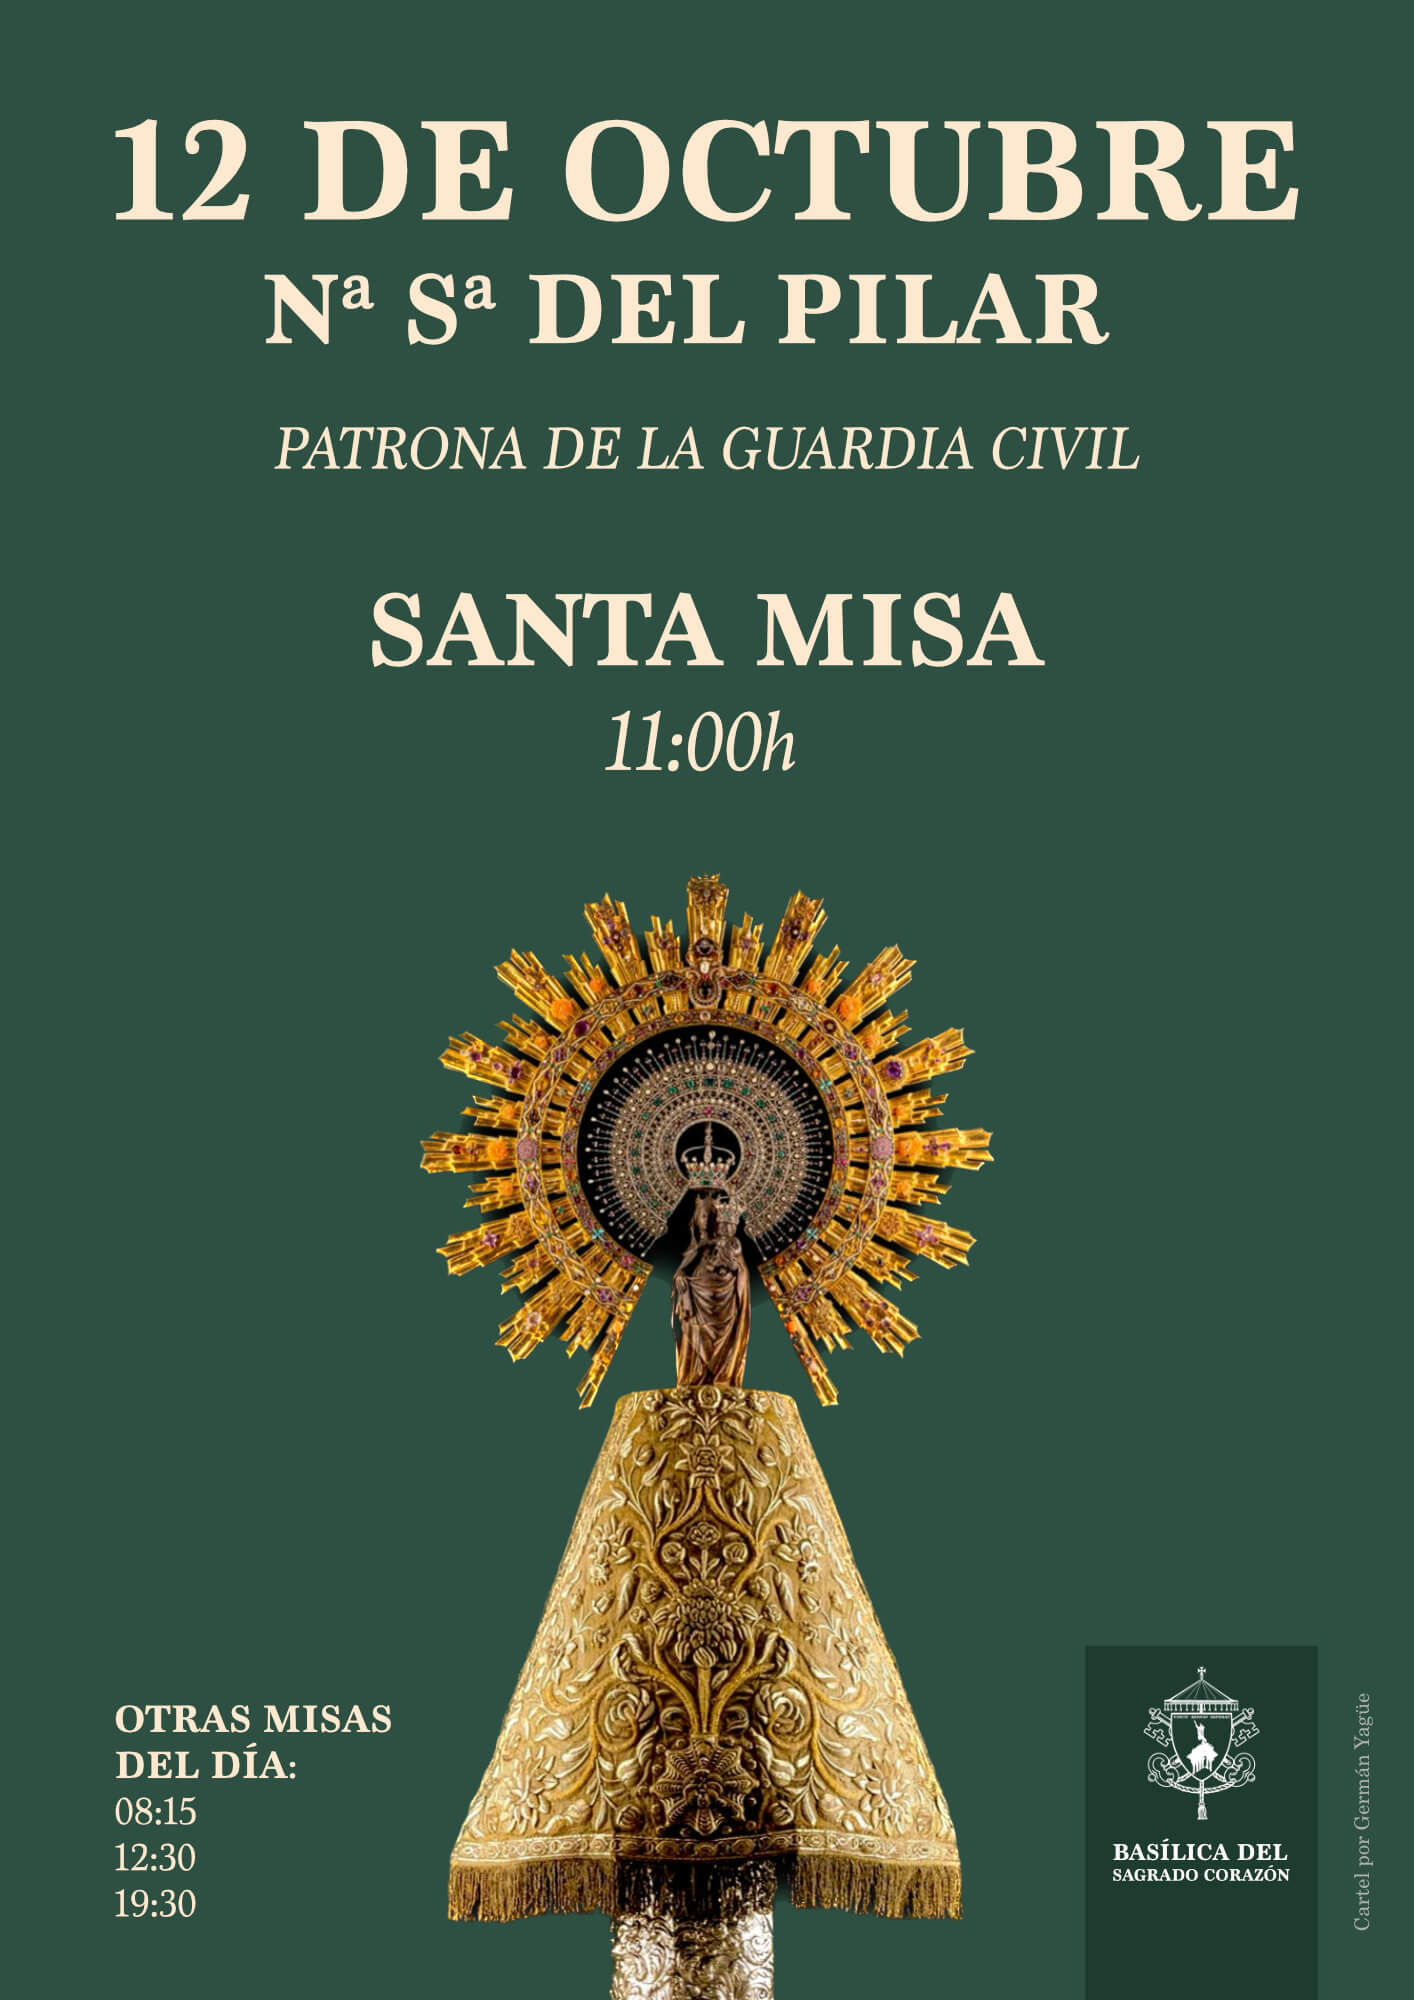 Santa Misa a la Virgen del Pilar, patrona de la Guardia Civil